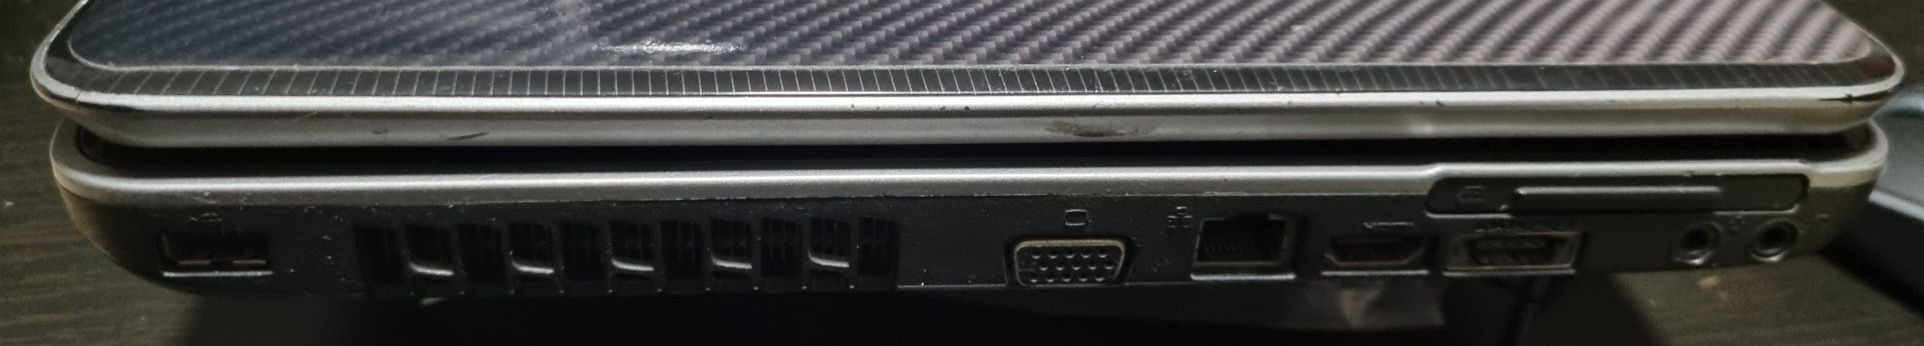 Laptop Toshiba Satellite A500-17X